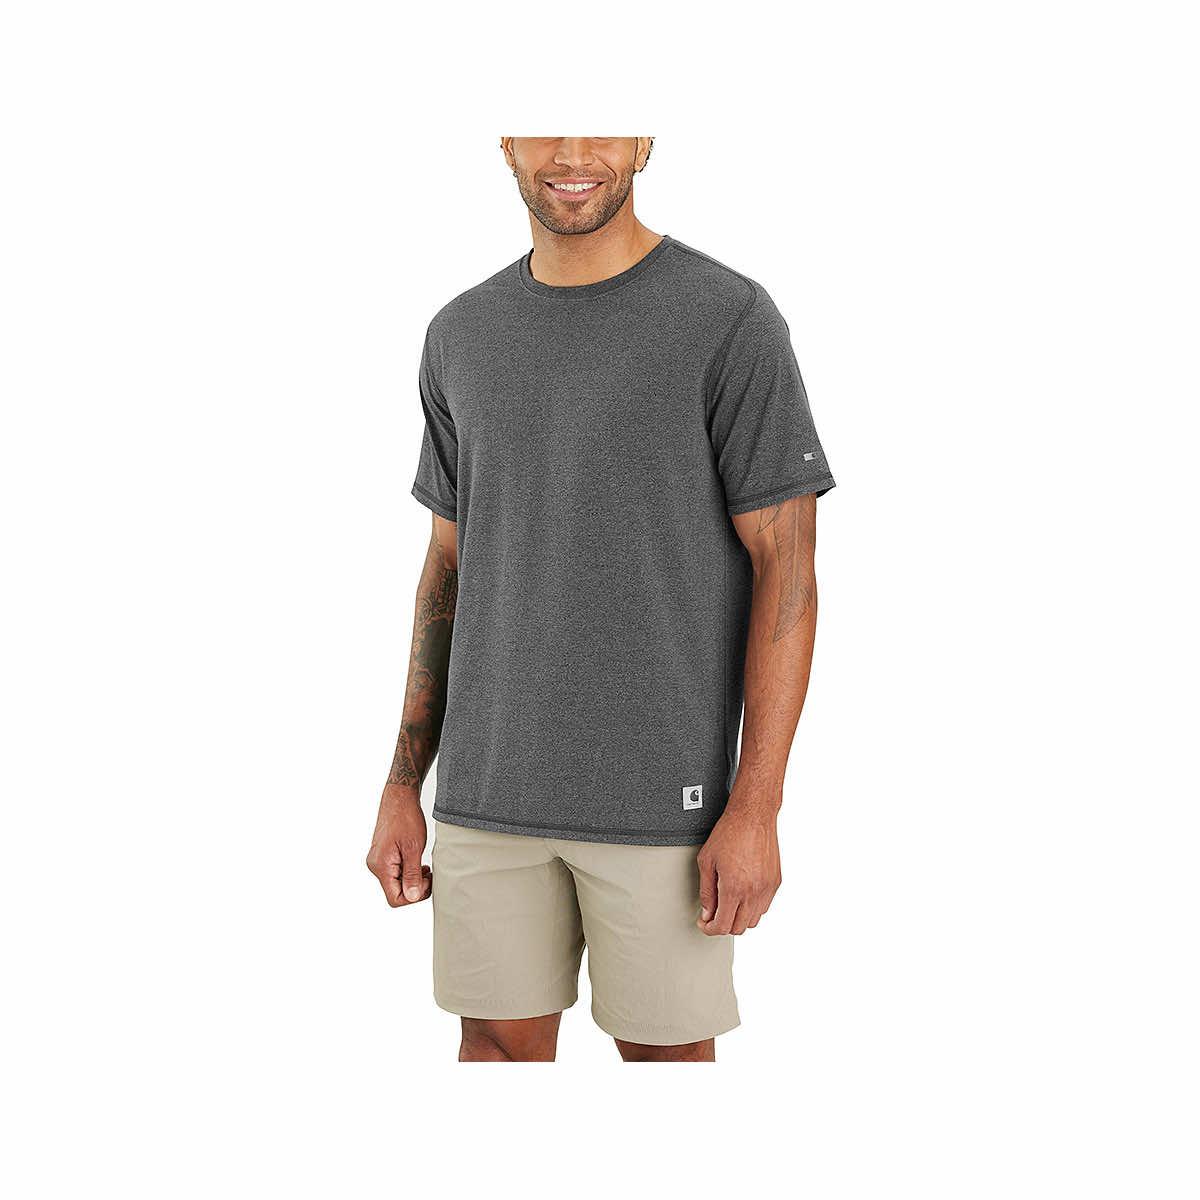  Men's Force Relaxed Fit Short Sleeve Lightweight T- Shirt